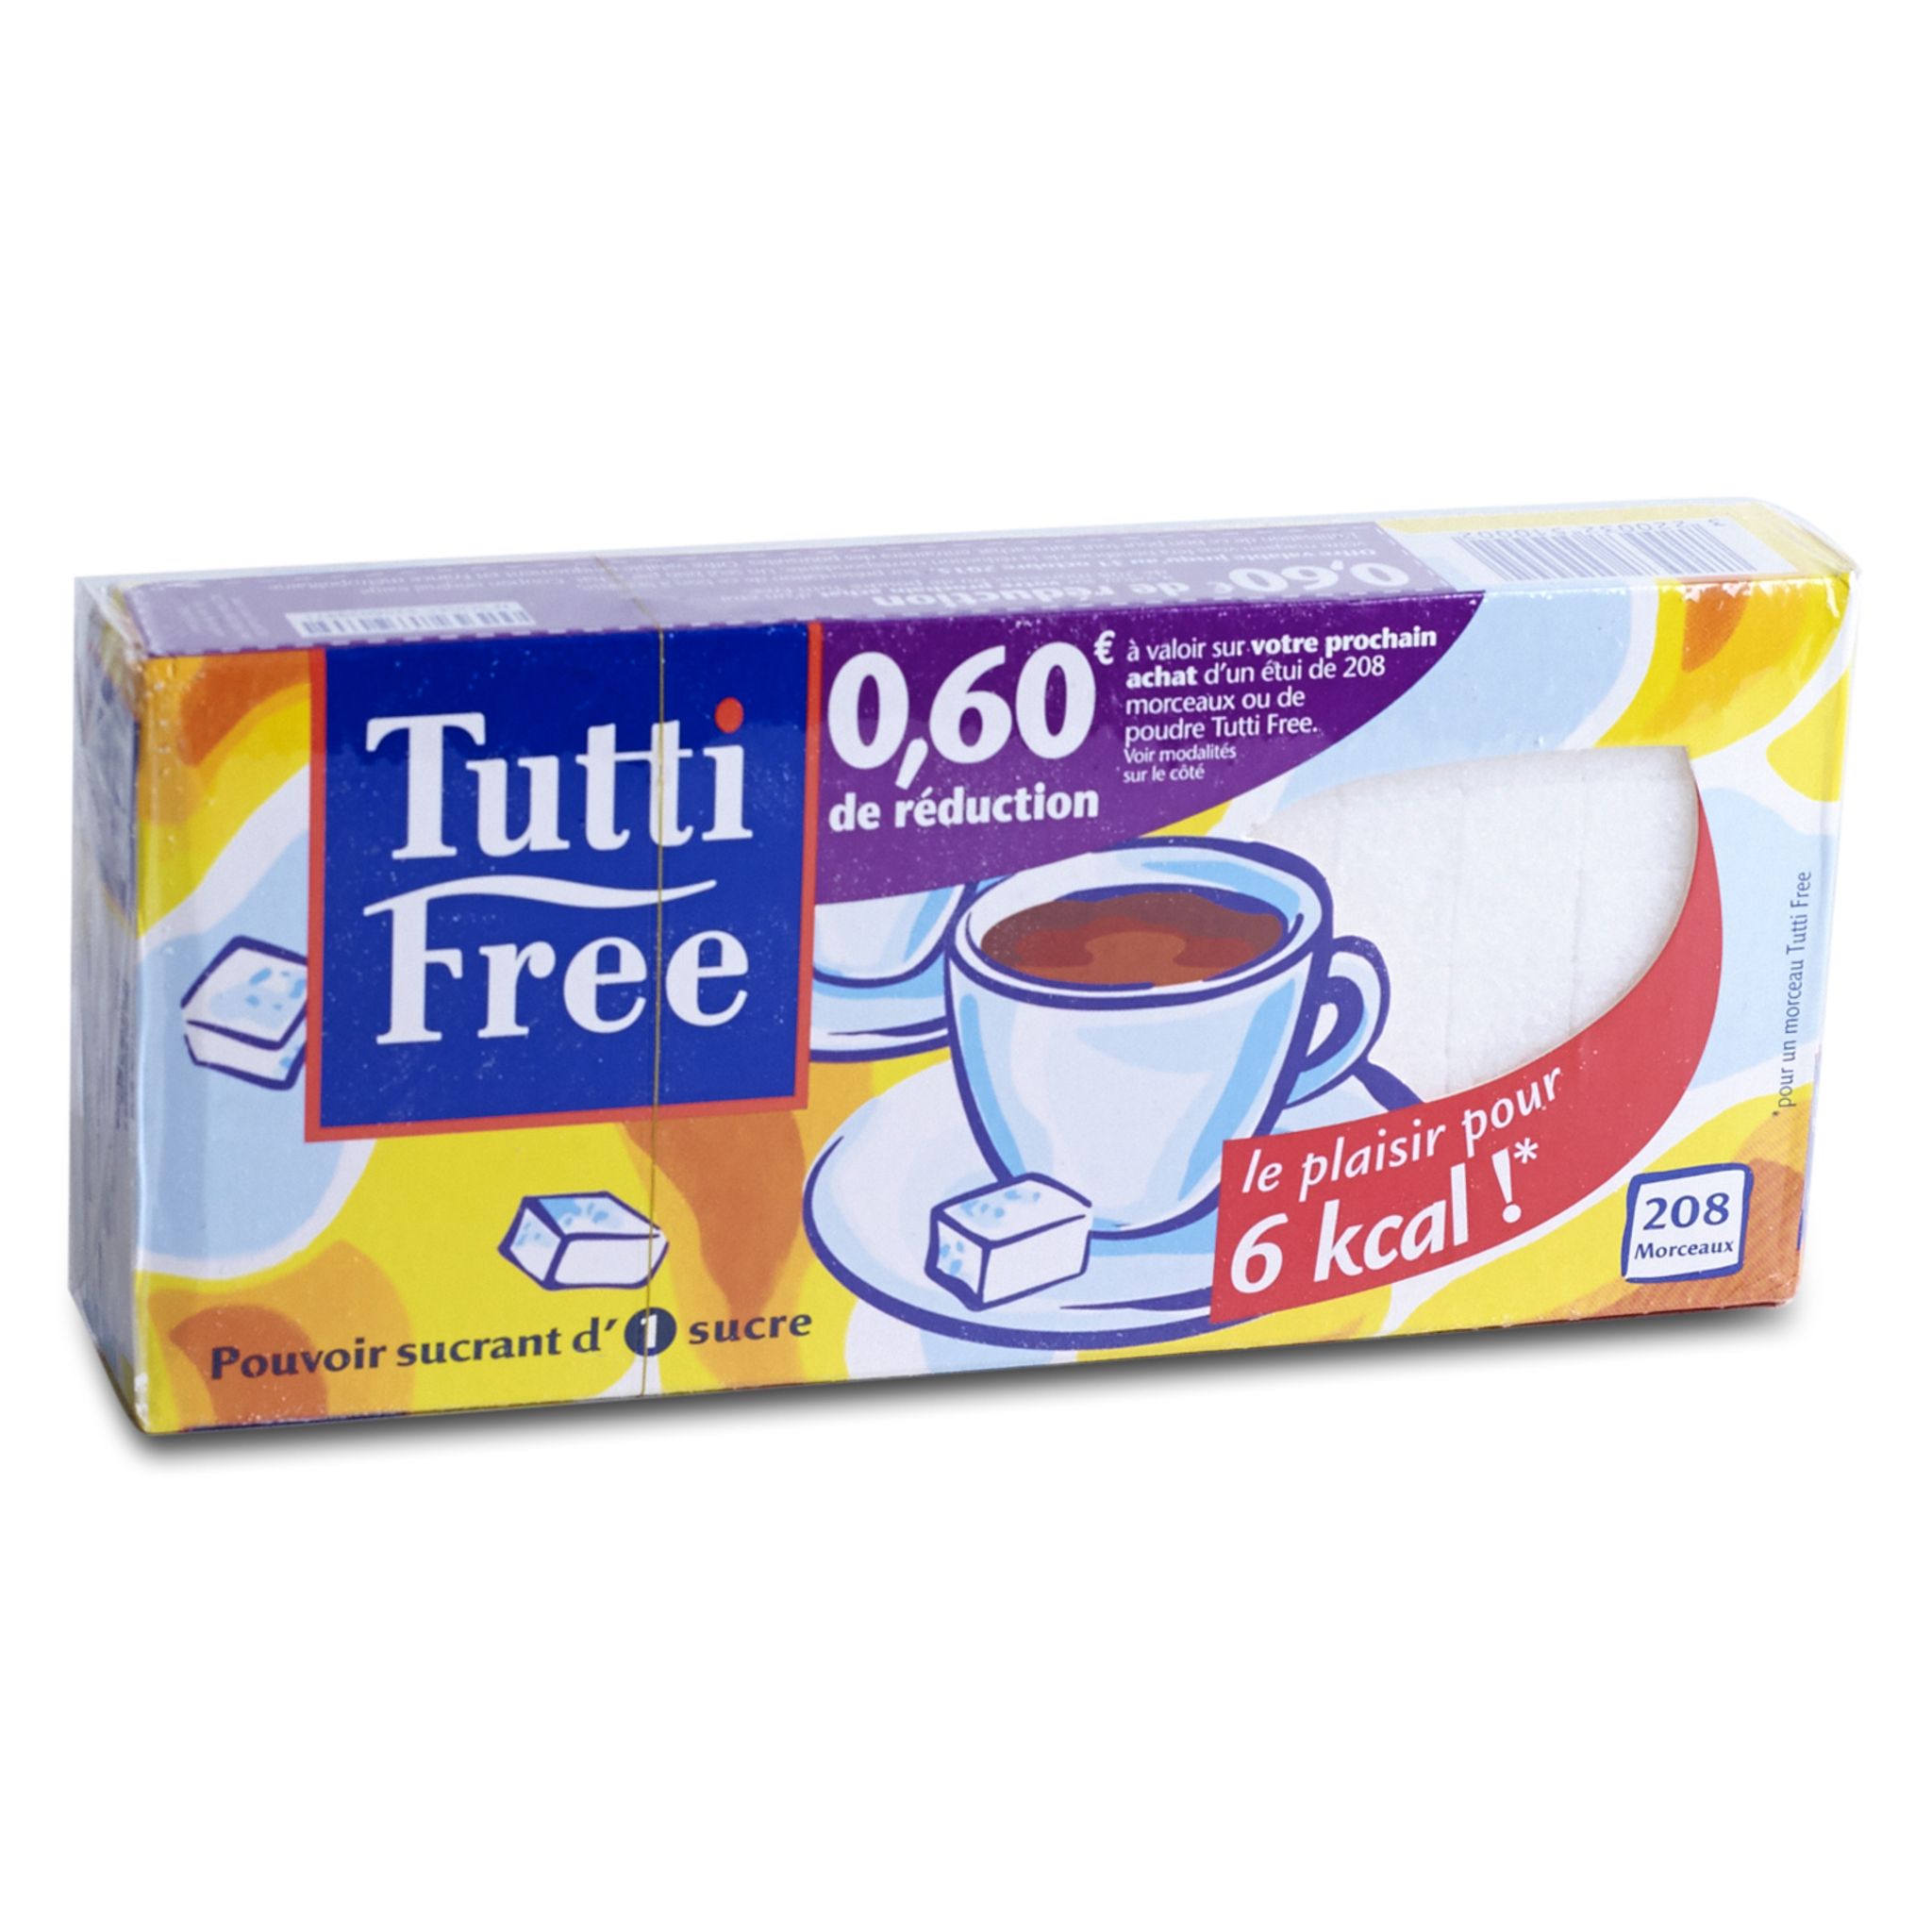 Edulcorant à base de sucre en morceaux, Tutti Free (x 208, 290 g